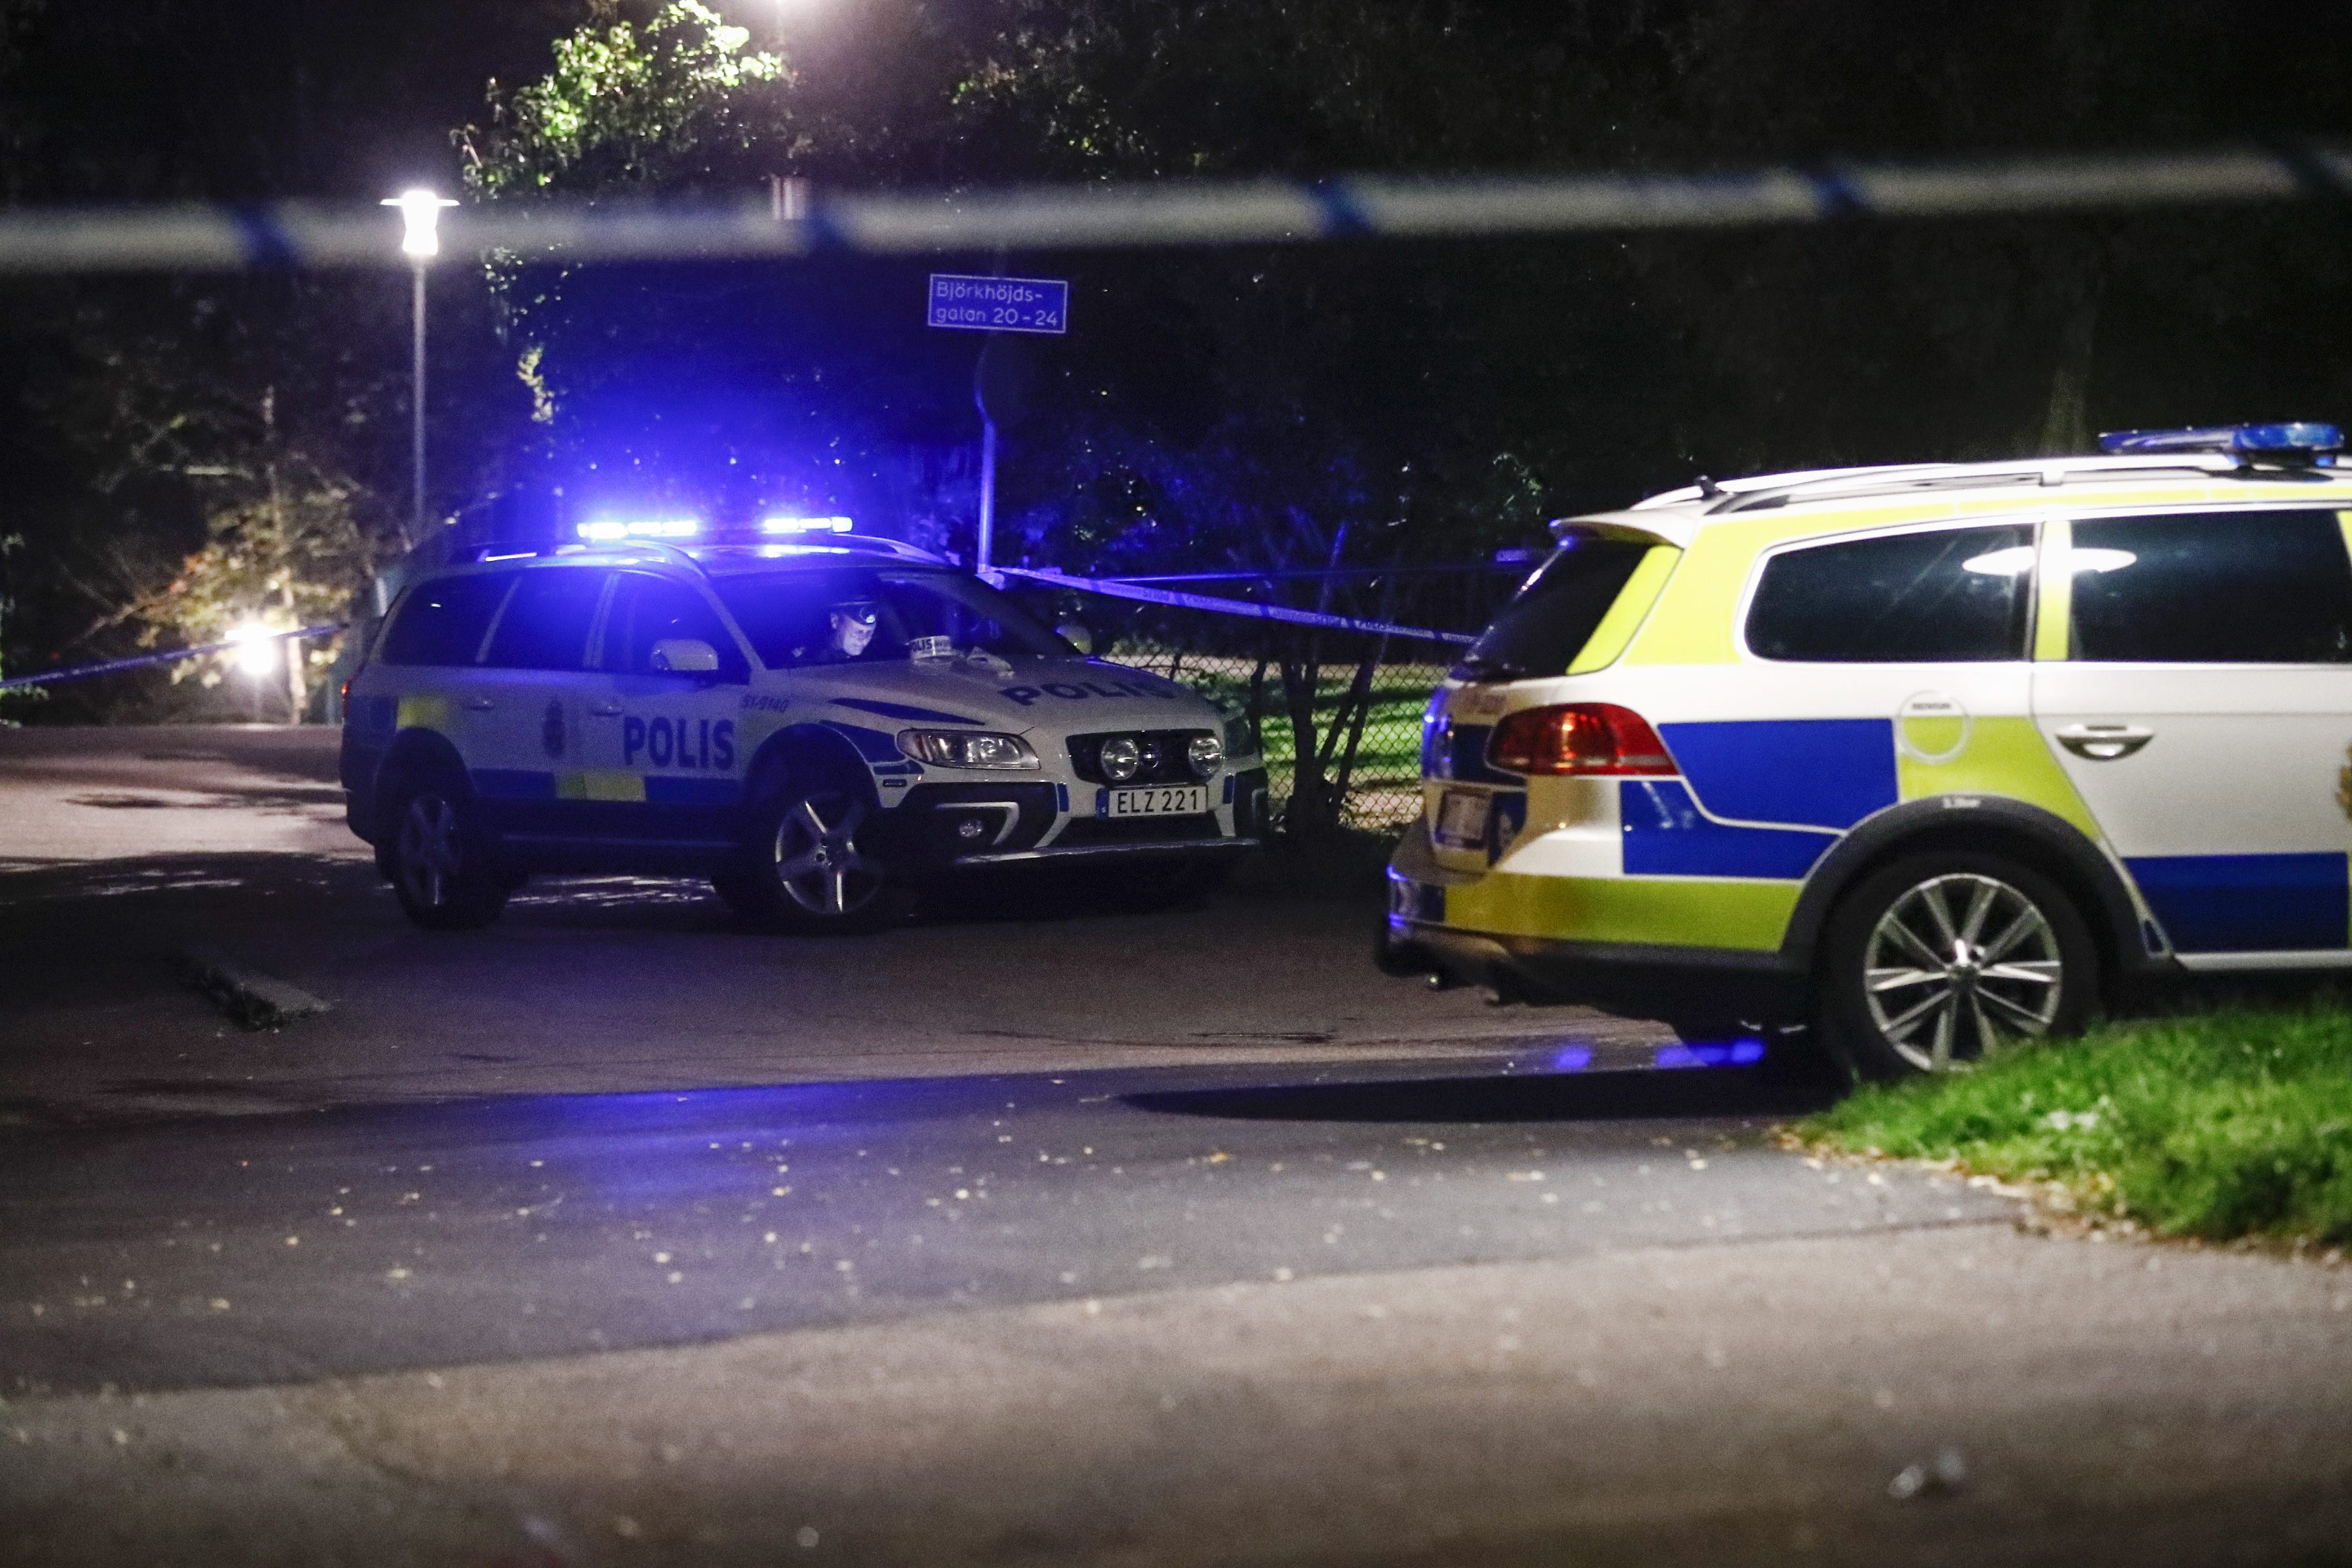 31 oupplarade gängmord i Göteborg: "Finns flera svårigheter"